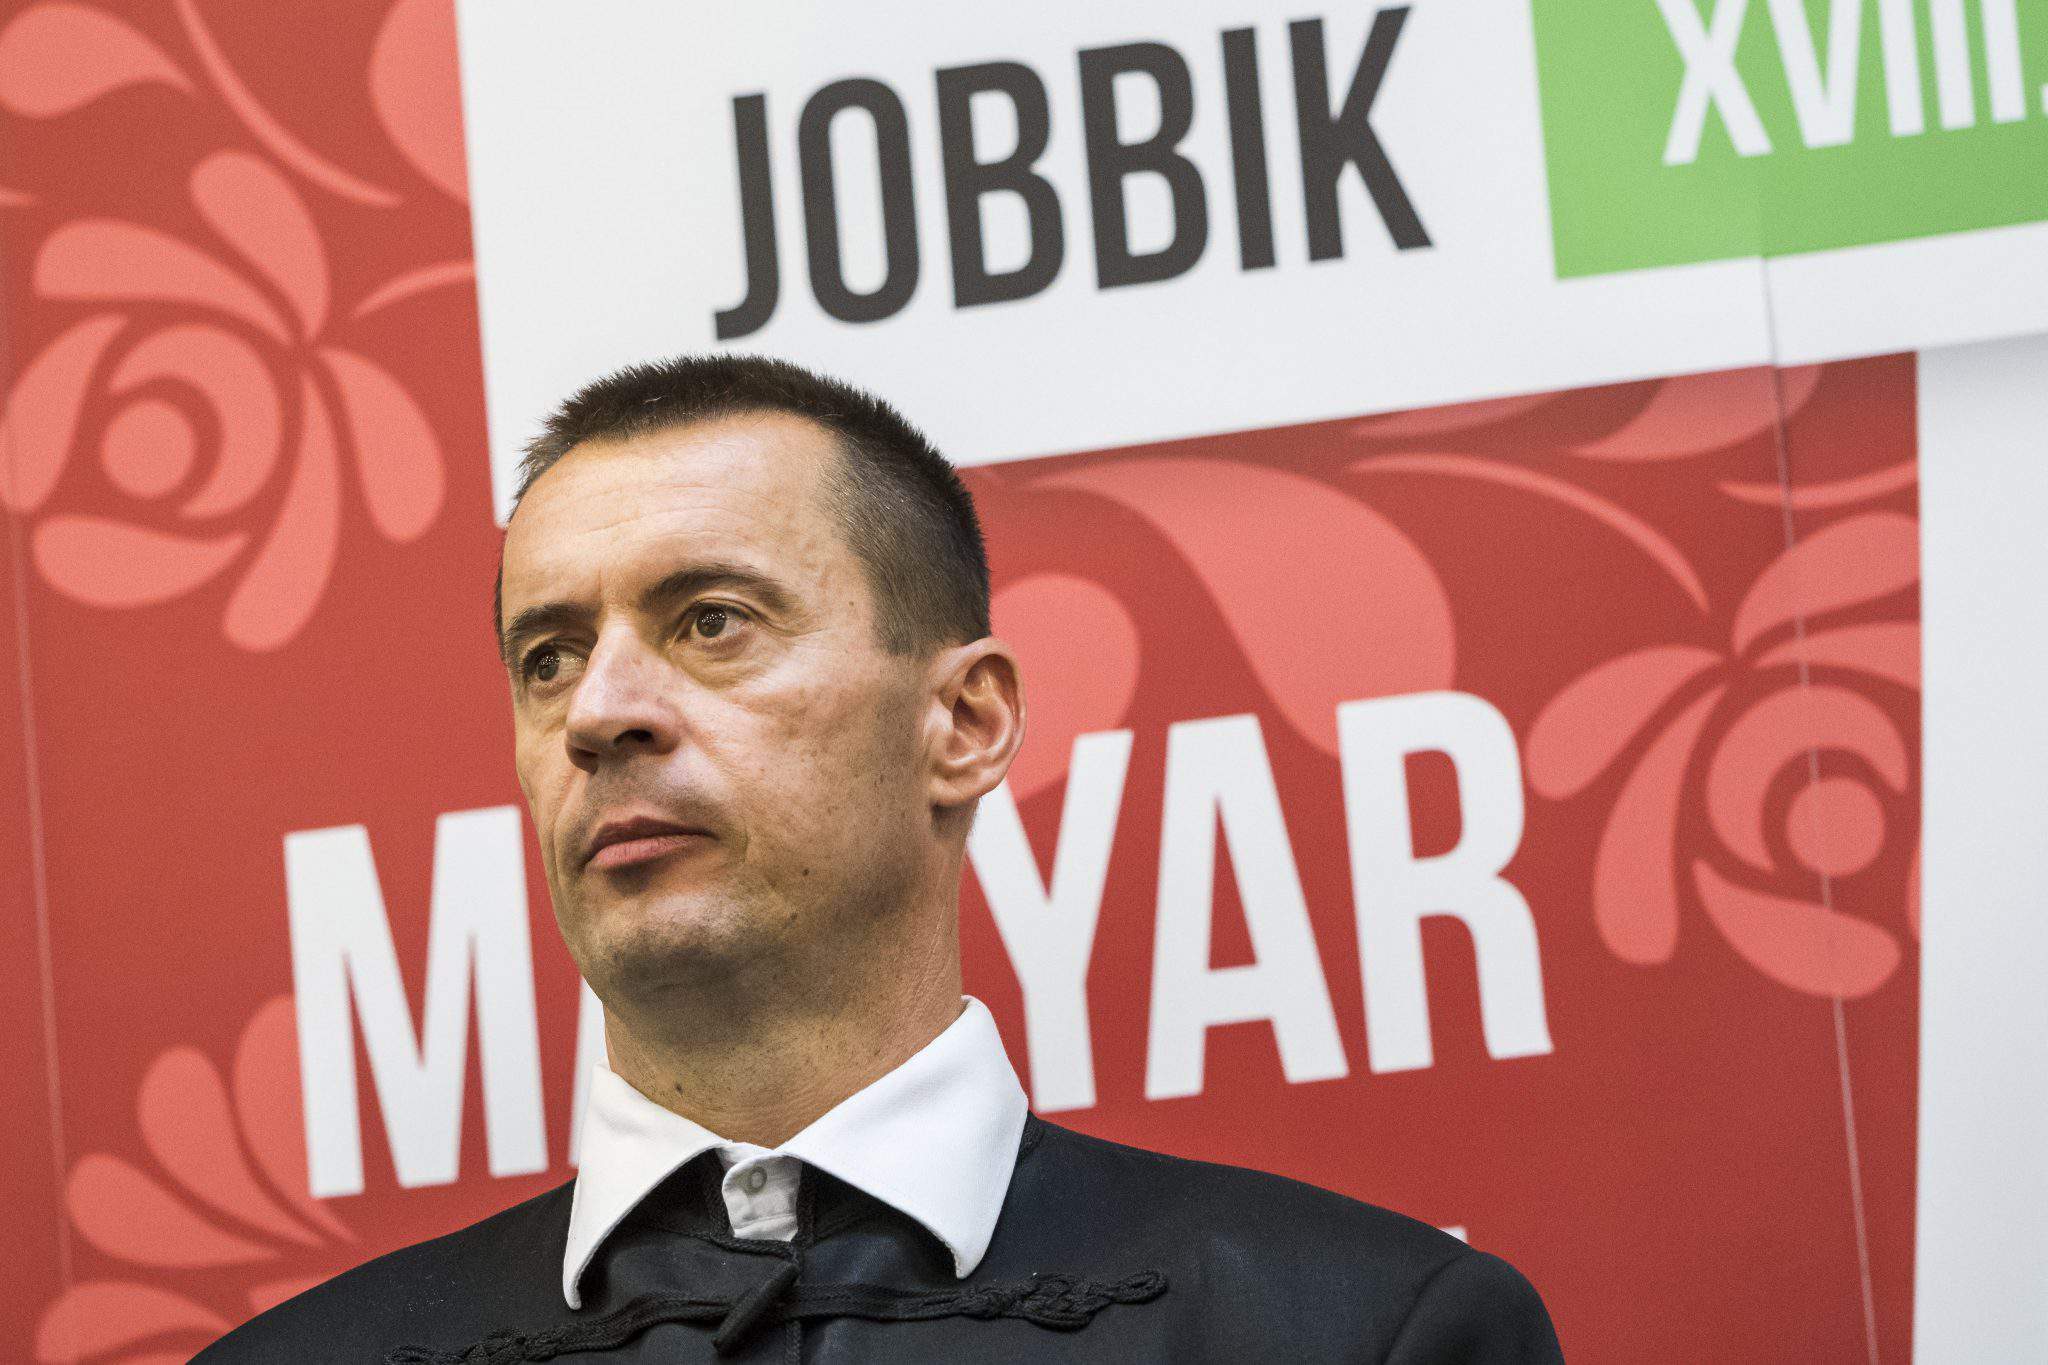 Jobbik noul președinte